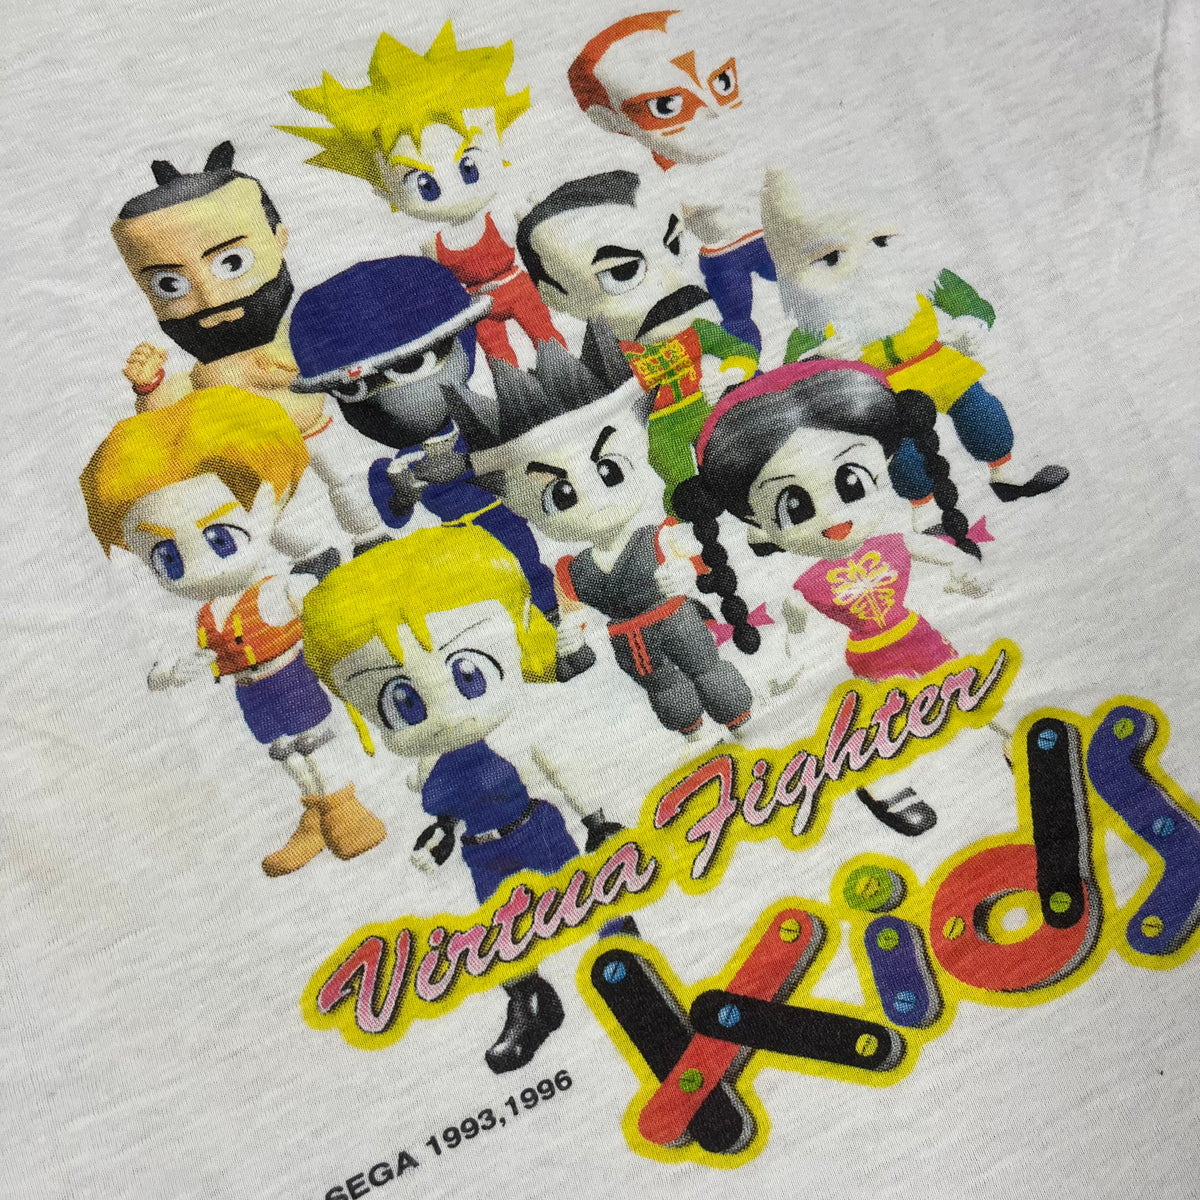 Vintage Virtua Fighter Kids &quot;SEGA 1996&quot; Promotional T-Shirt